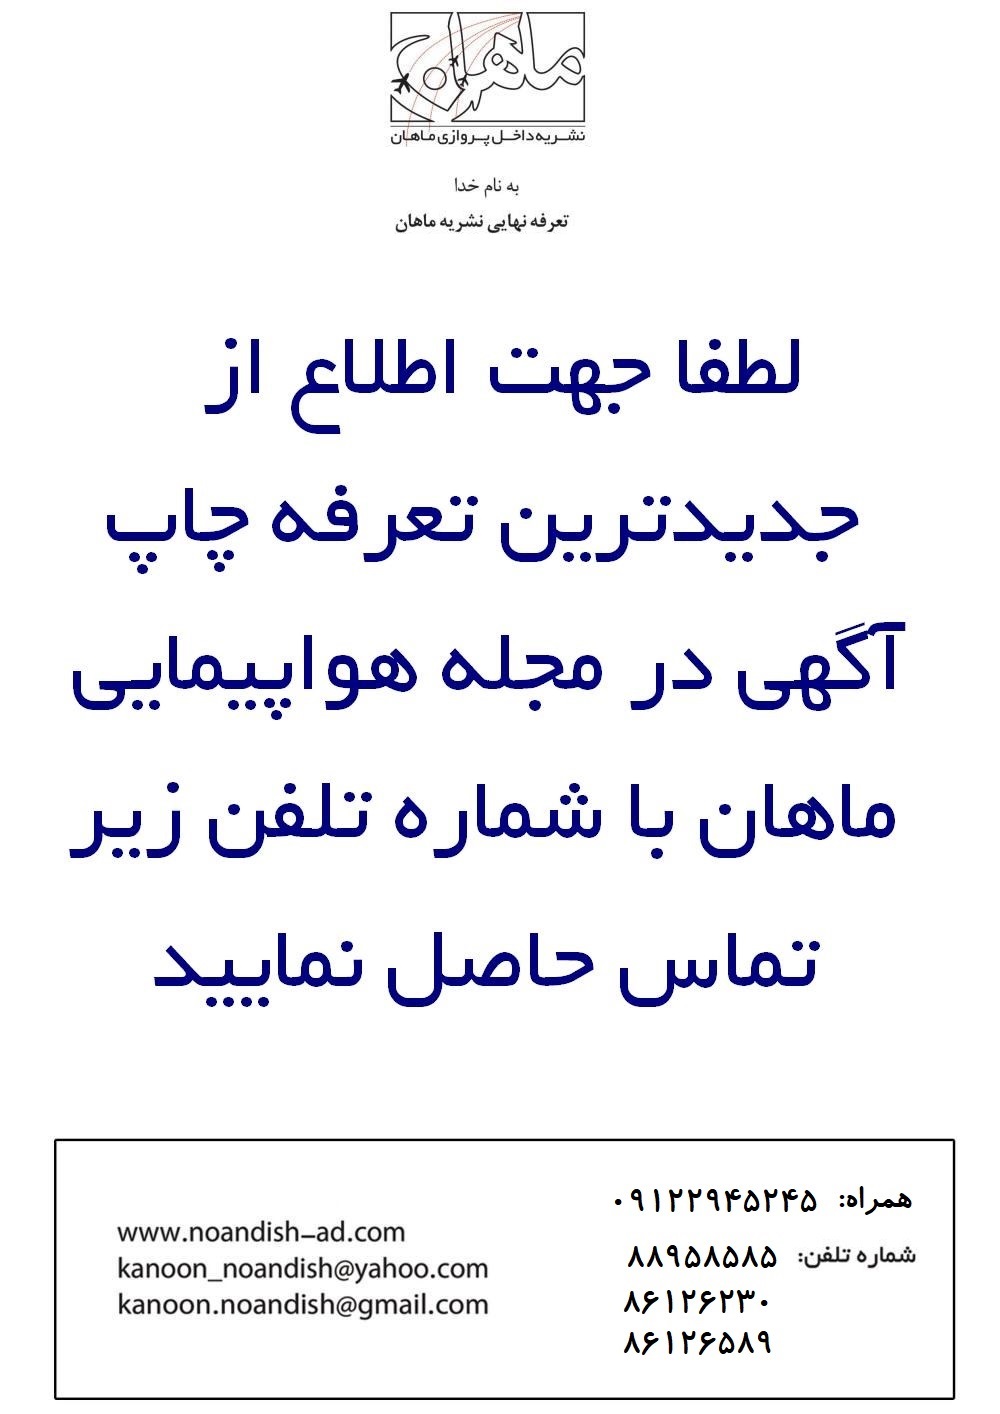 چاپ آگهی در مجله ماهان